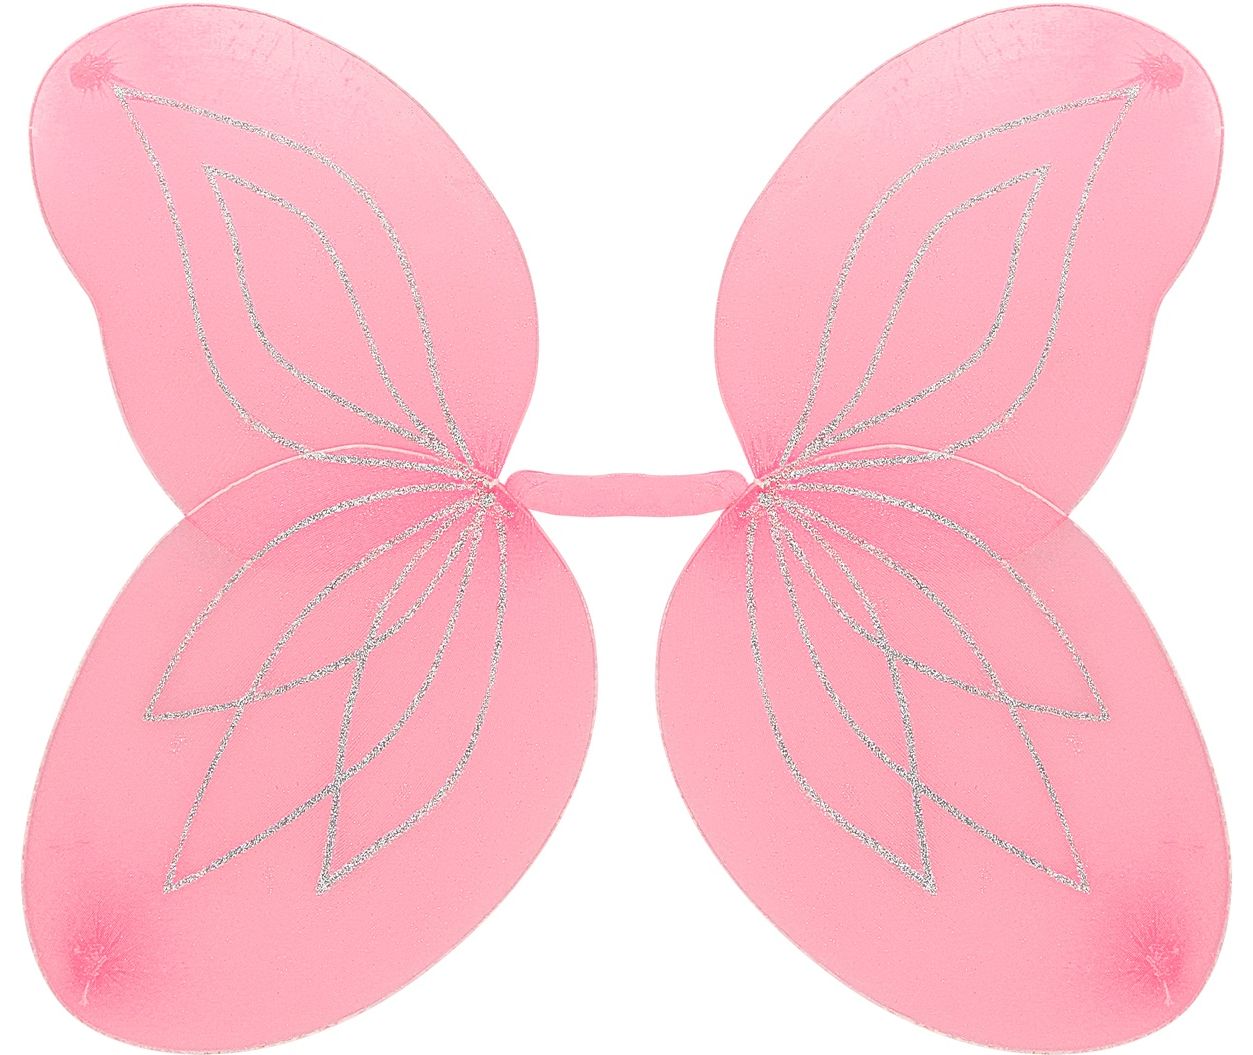 Roze glitterende vlinder vleugels kind